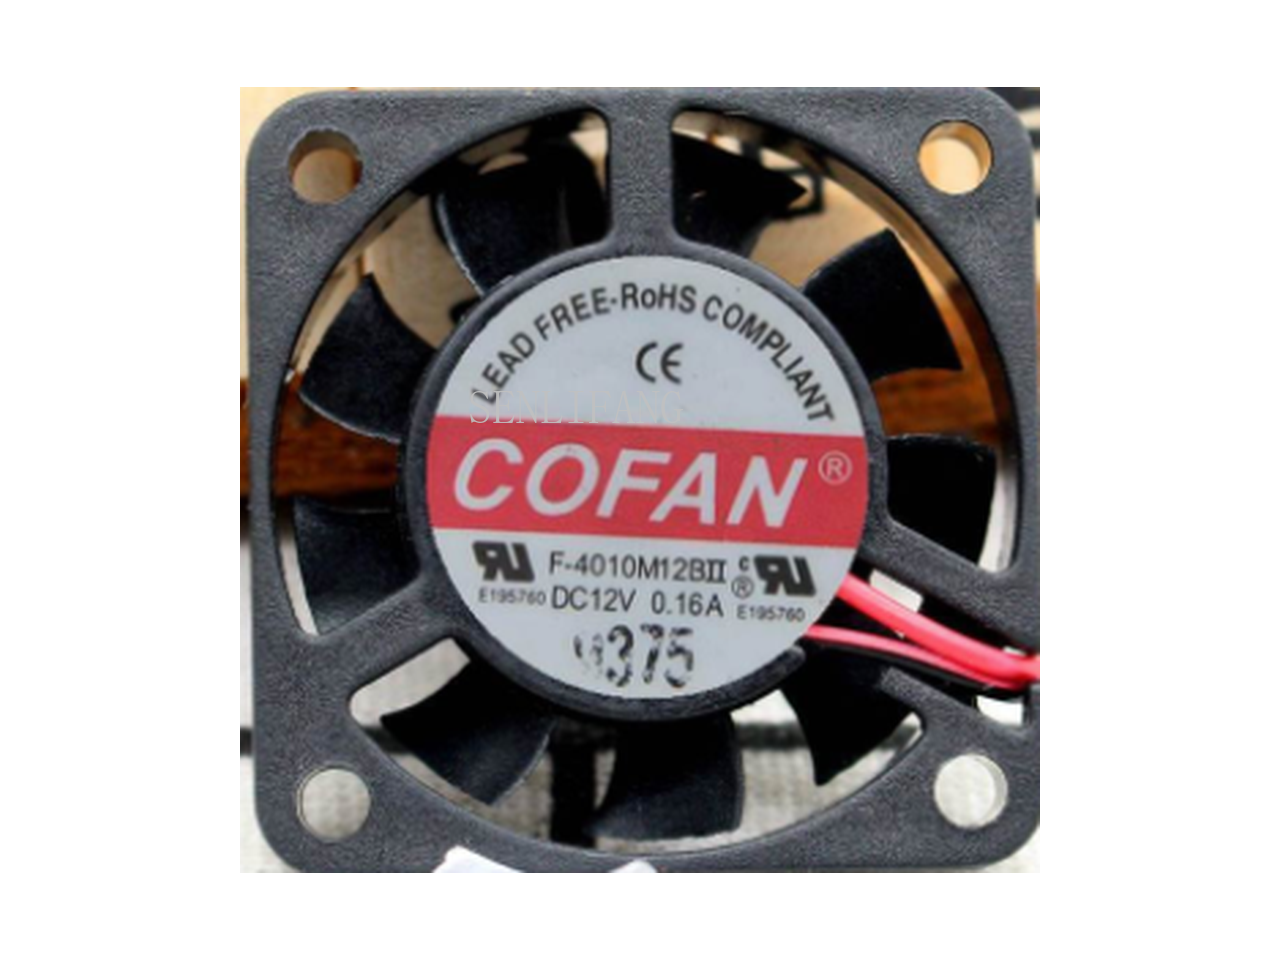 For Cofan F 4010m12bii Dc 12v 0 16a 40x40x10mm 3 Wire Server Cooler Fan One Year Warranty Newegg Com